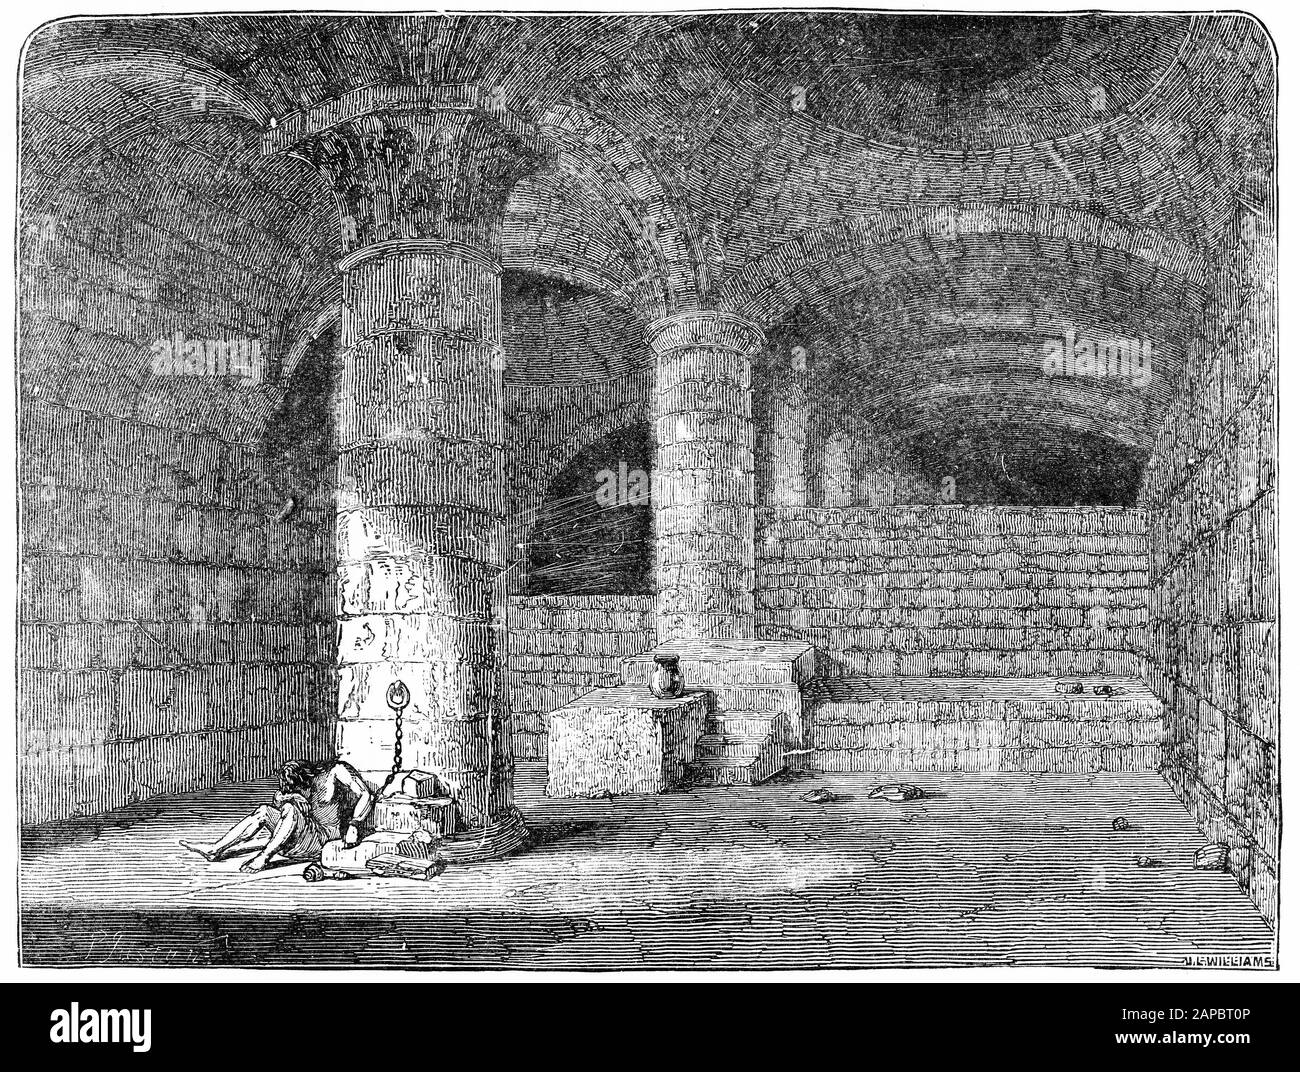 Grabado del vestigio del acercamiento meridional al templo en Jerusalén,  conocido como la puerta de Huldah, a través de la cual el rey Salomón pasó  al subir a la casa del señor (